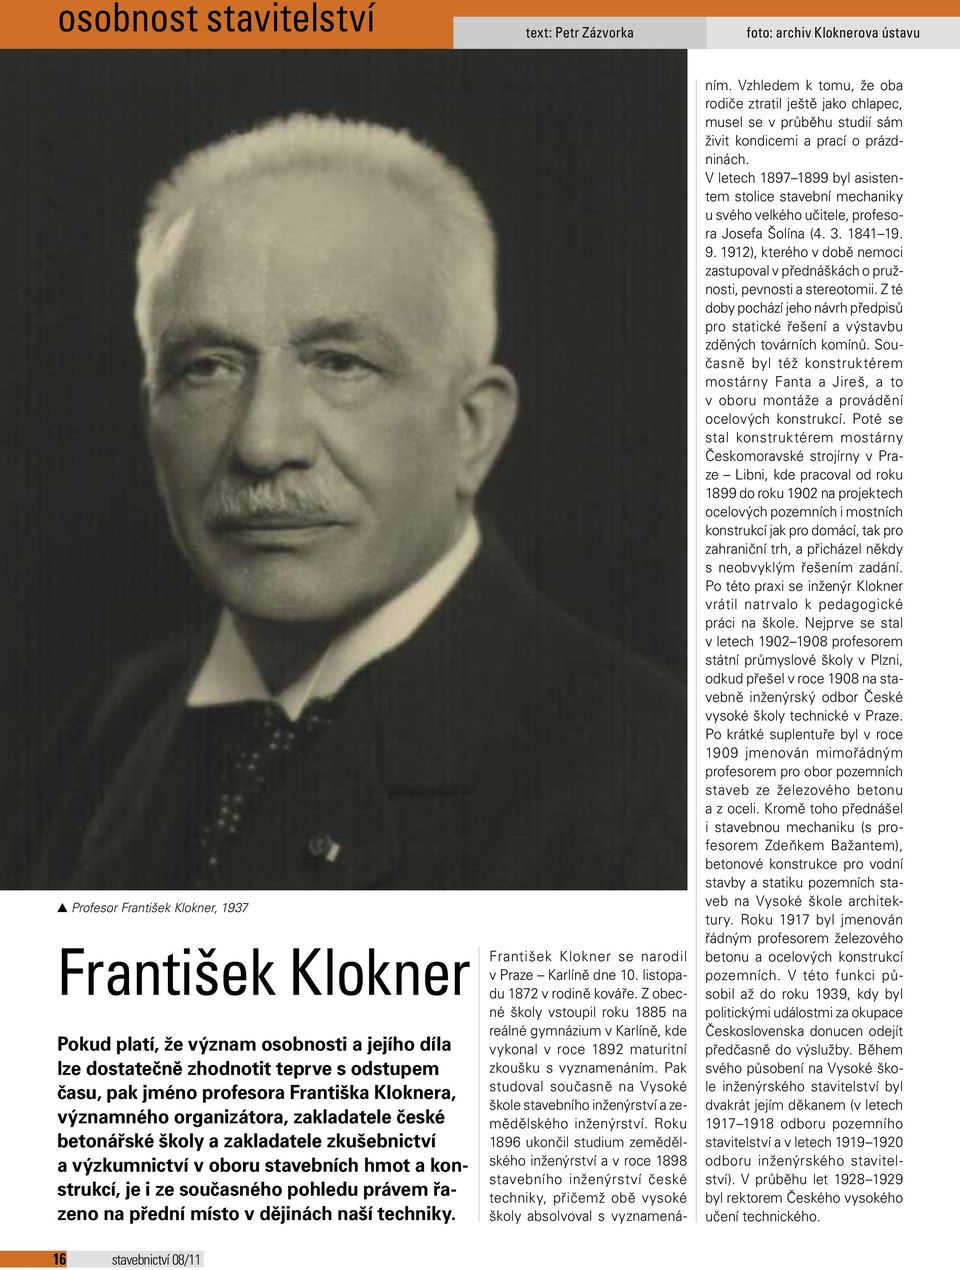 konstrukcí, je i ze současného pohledu právem řazeno na přední místo v dějinách naší techniky. František Klokner se narodil v Praze Karlíně dne 10. listopadu 1872 v rodině kováře.